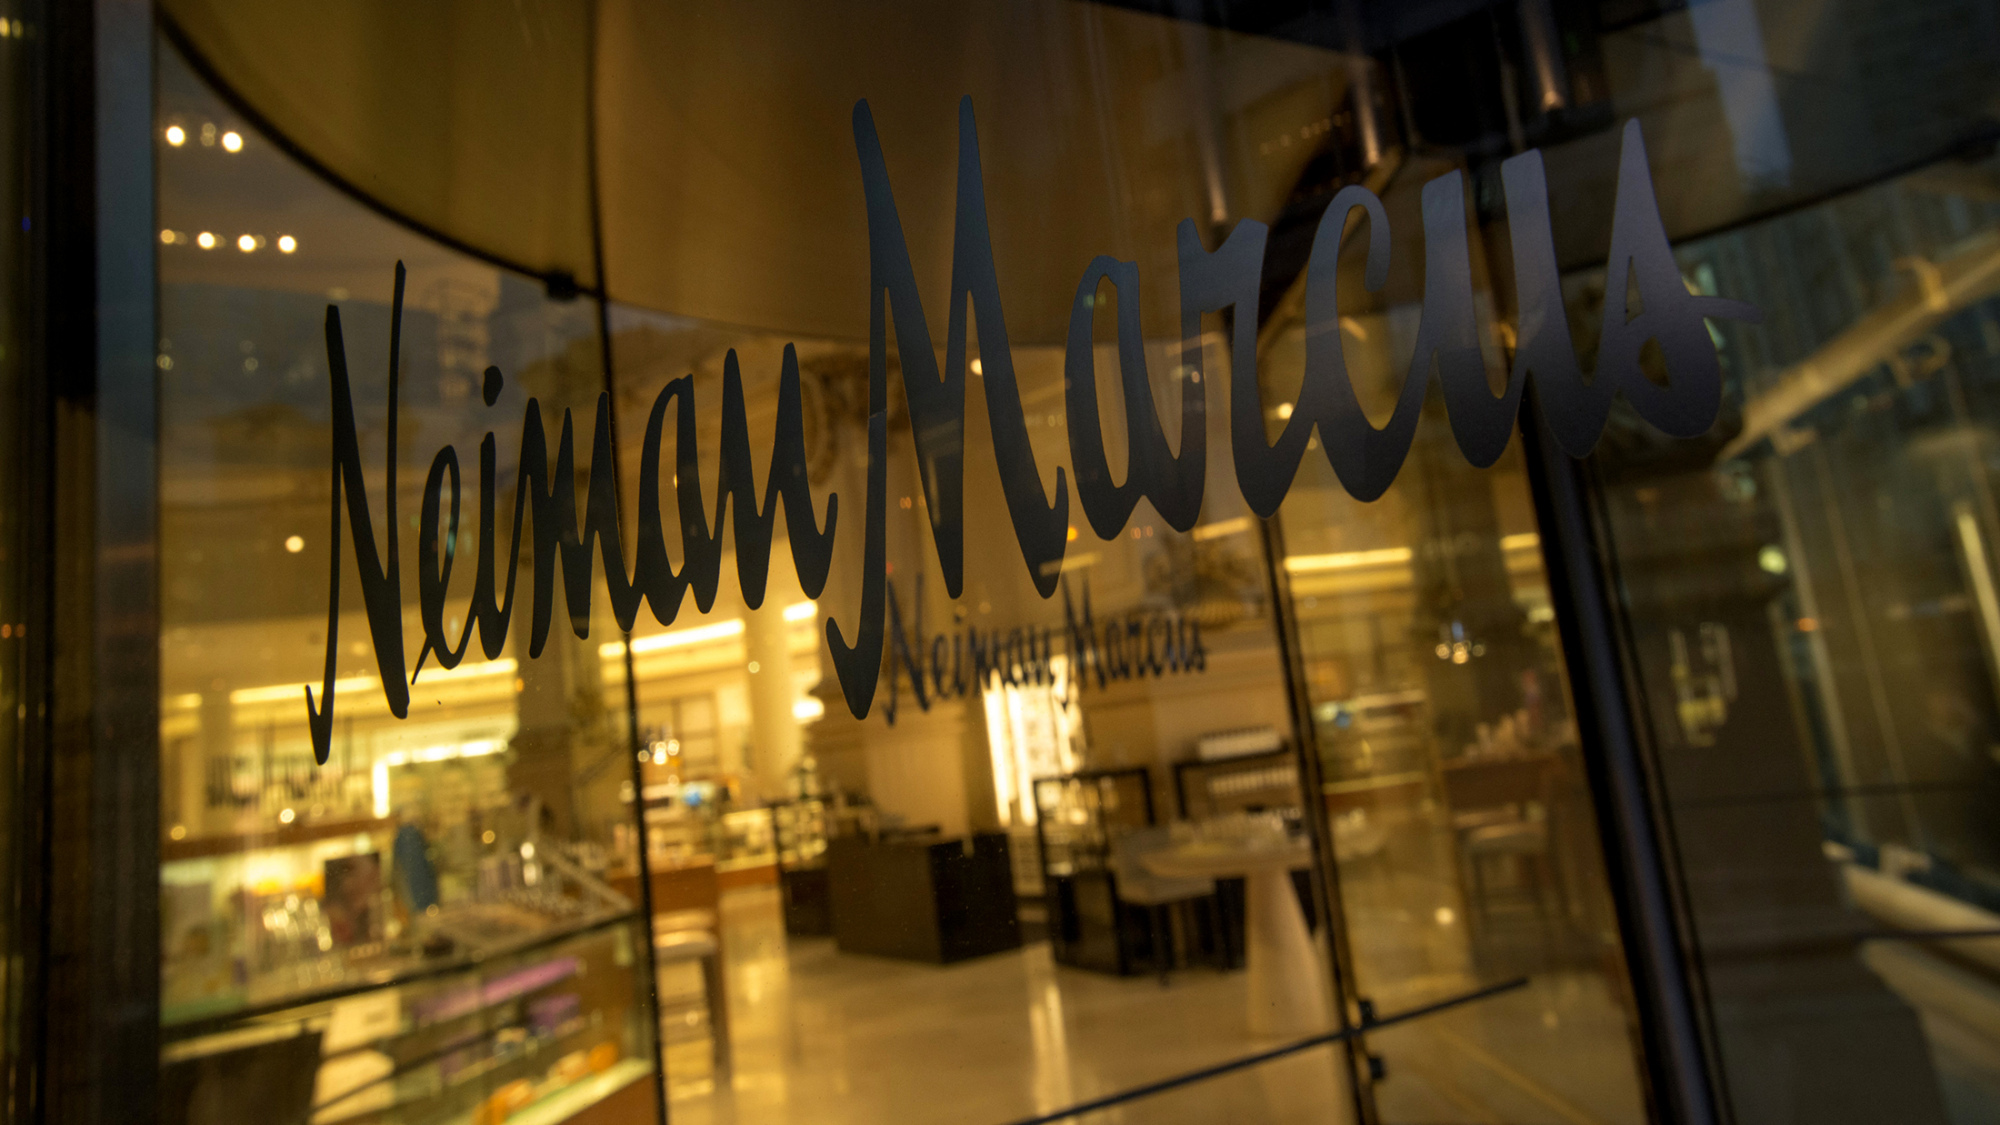 Neiman Marcus weighs possible sale of Bergdorf Goodman